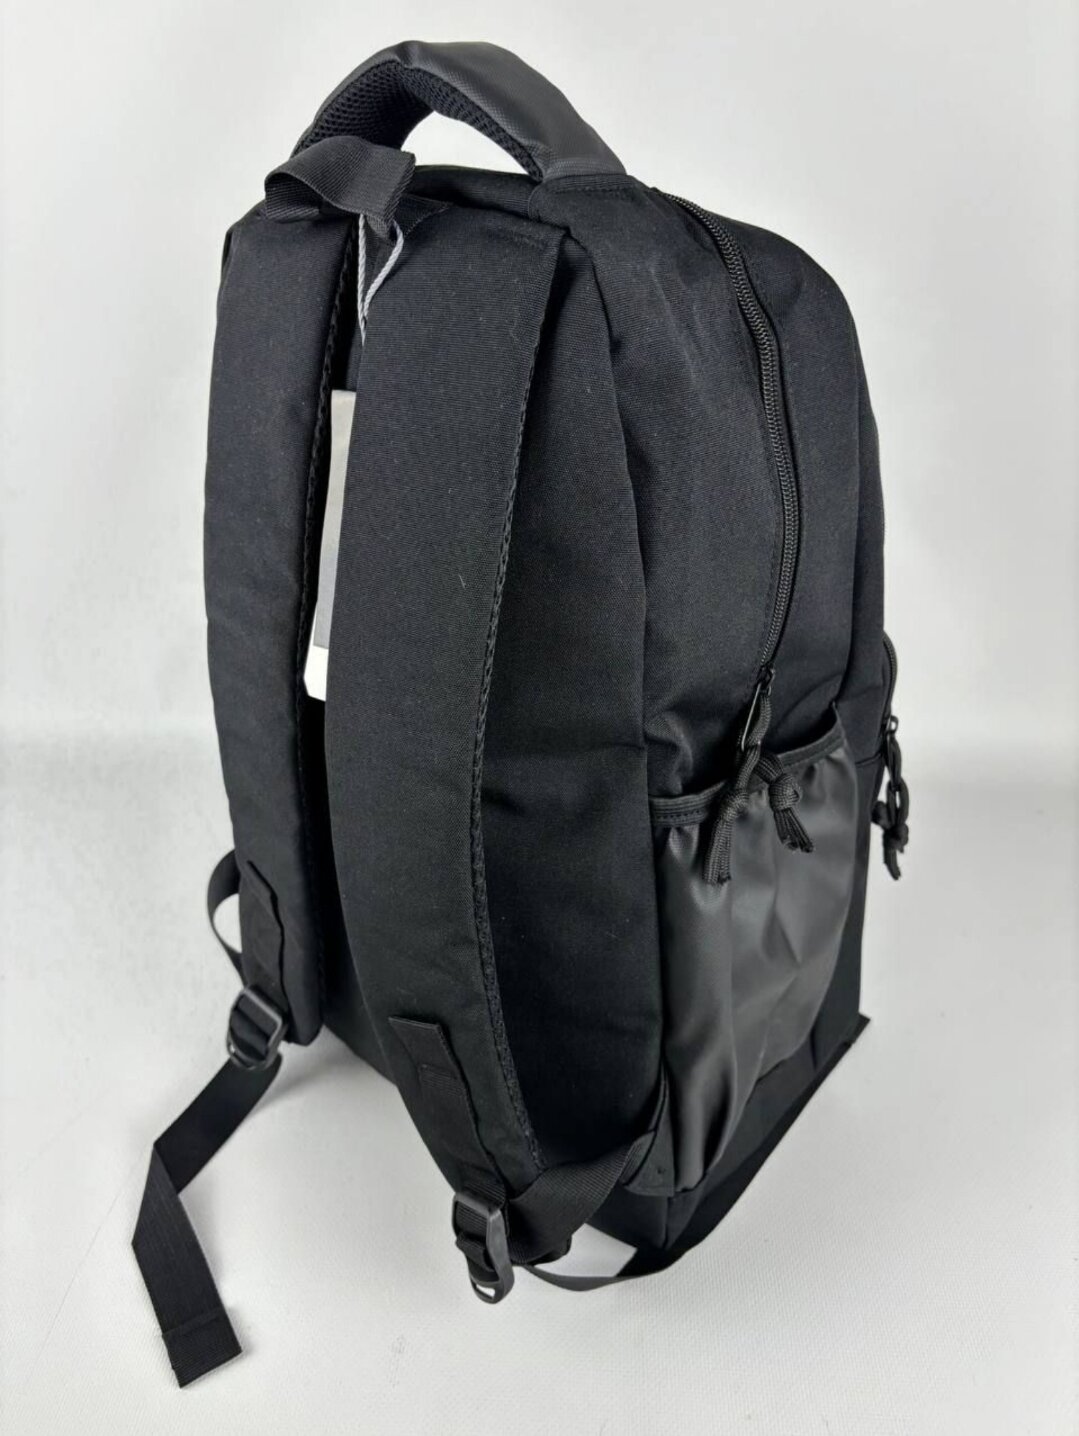 Рюкзак Adidas черный вместительный городской/спортивный, унисекс для учебы, работы, путешествий, 47×17×30 см